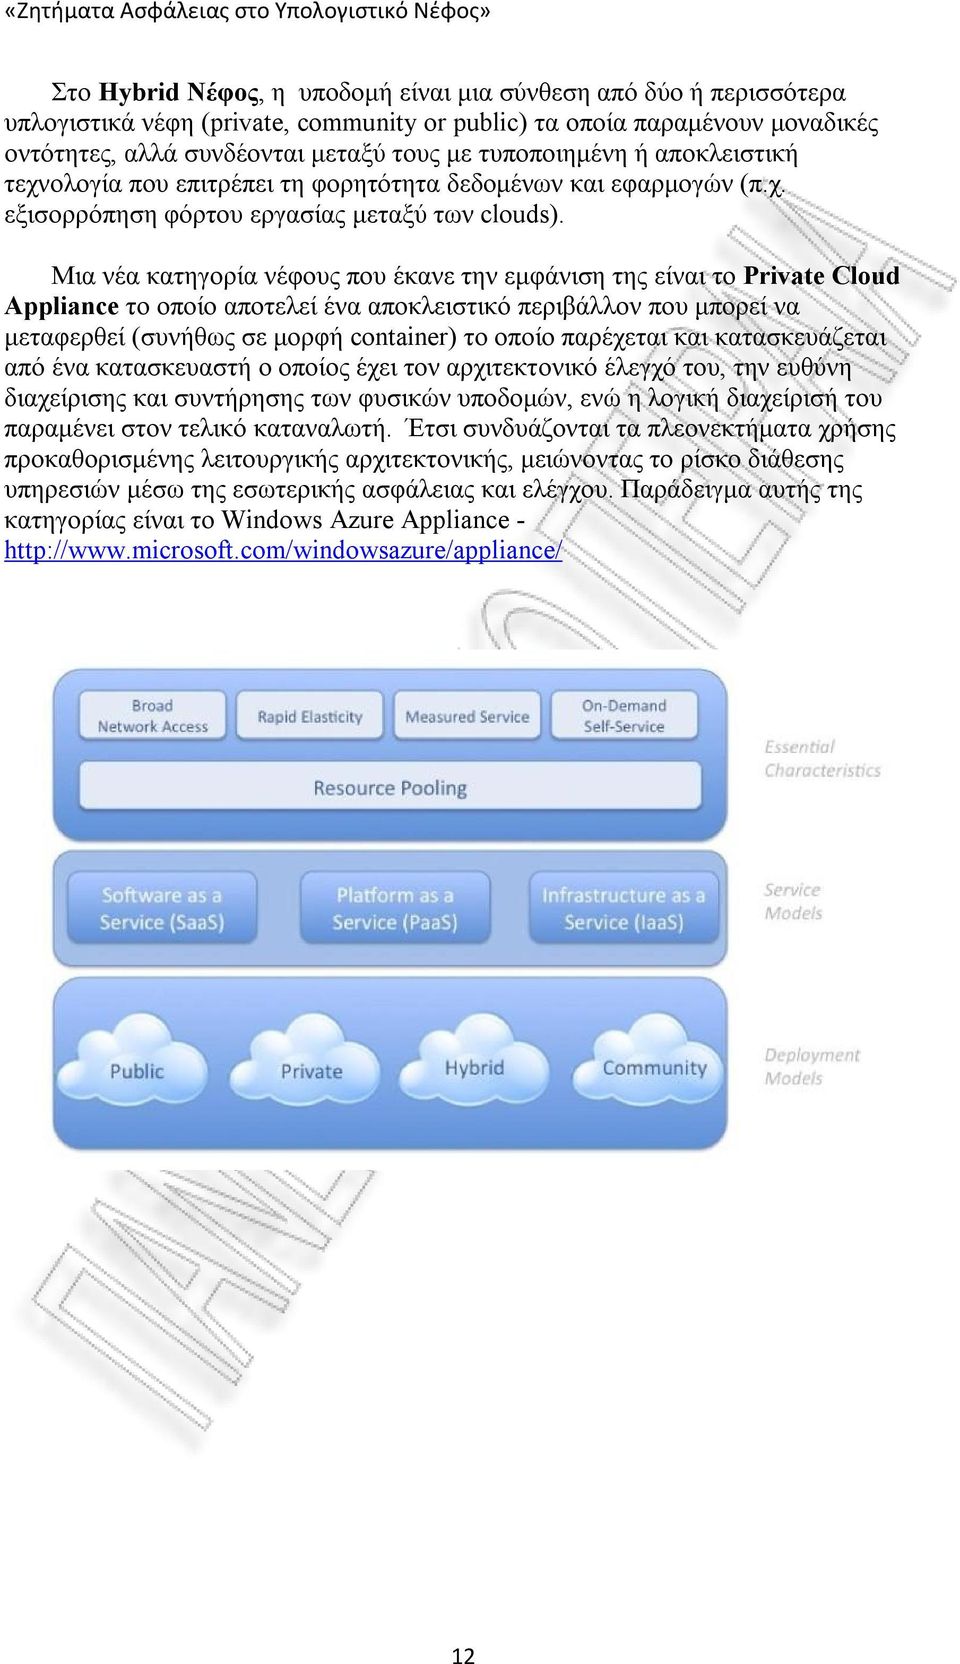 Μια νέα κατηγορία νέφους που έκανε την εμφάνιση της είναι το Private Cloud Appliance το οποίο αποτελεί ένα αποκλειστικό περιβάλλον που μπορεί να μεταφερθεί (συνήθως σε μορφή container) το οποίο